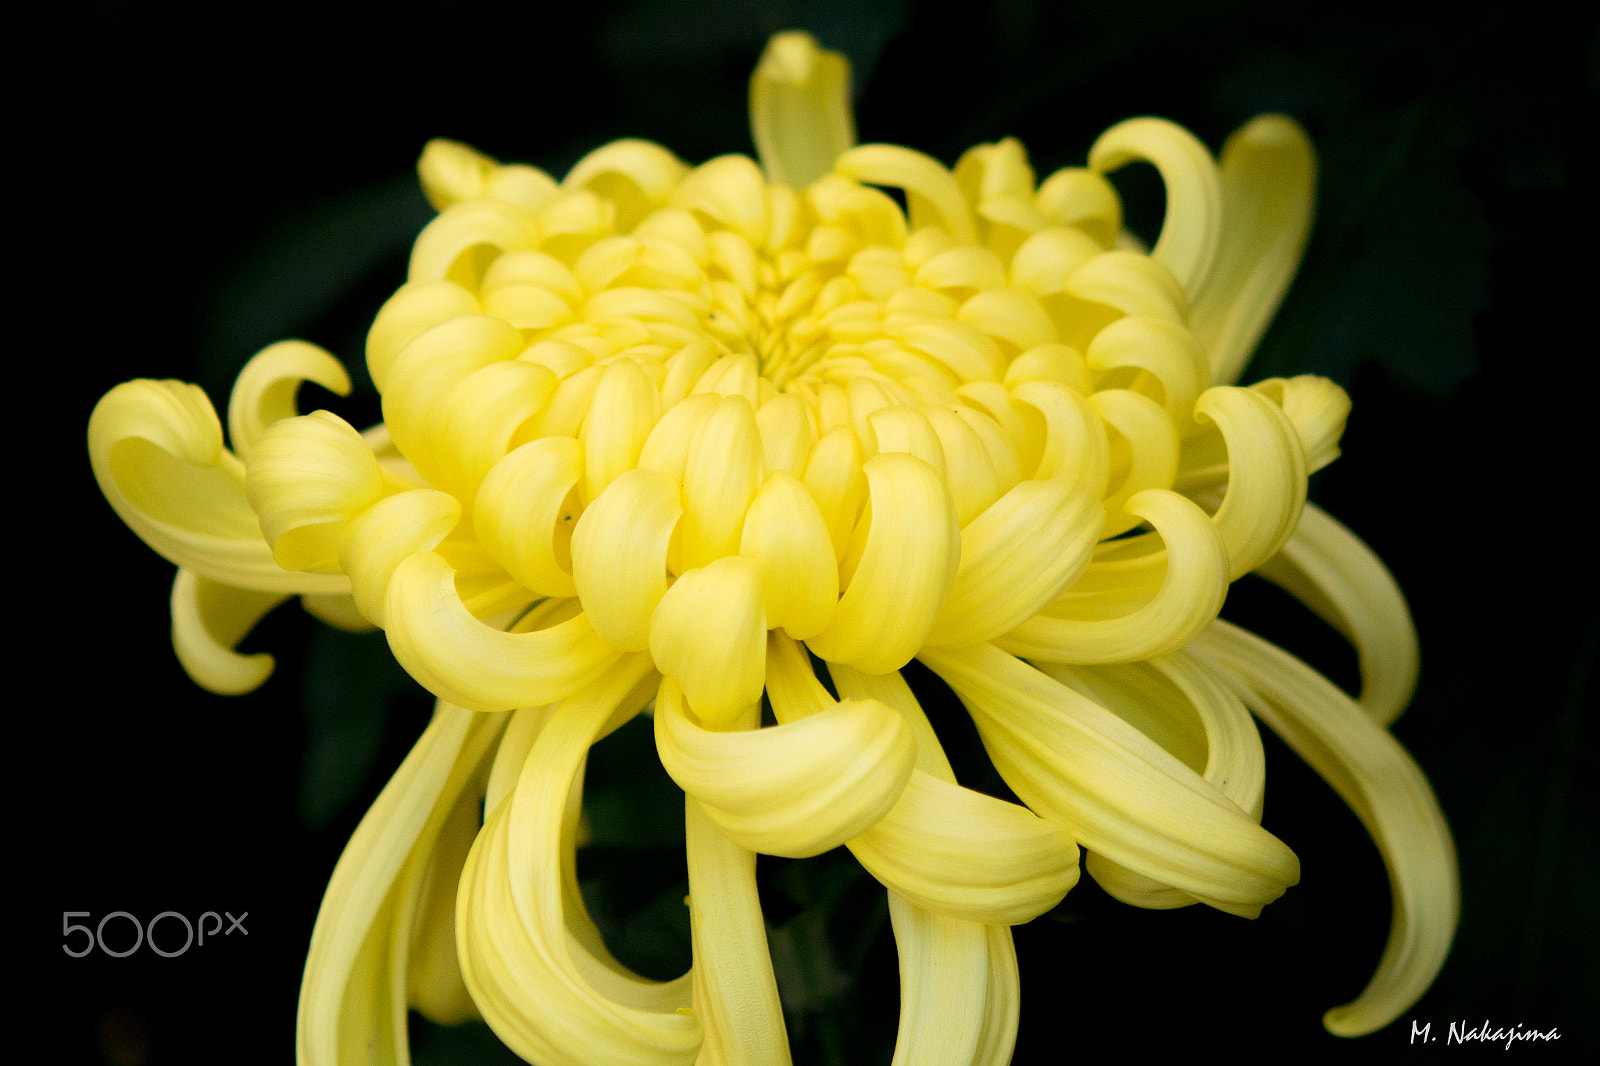 Nikon 1 V3 + 60mm f/2.8G sample photo. Chrysanthemum -1 photography